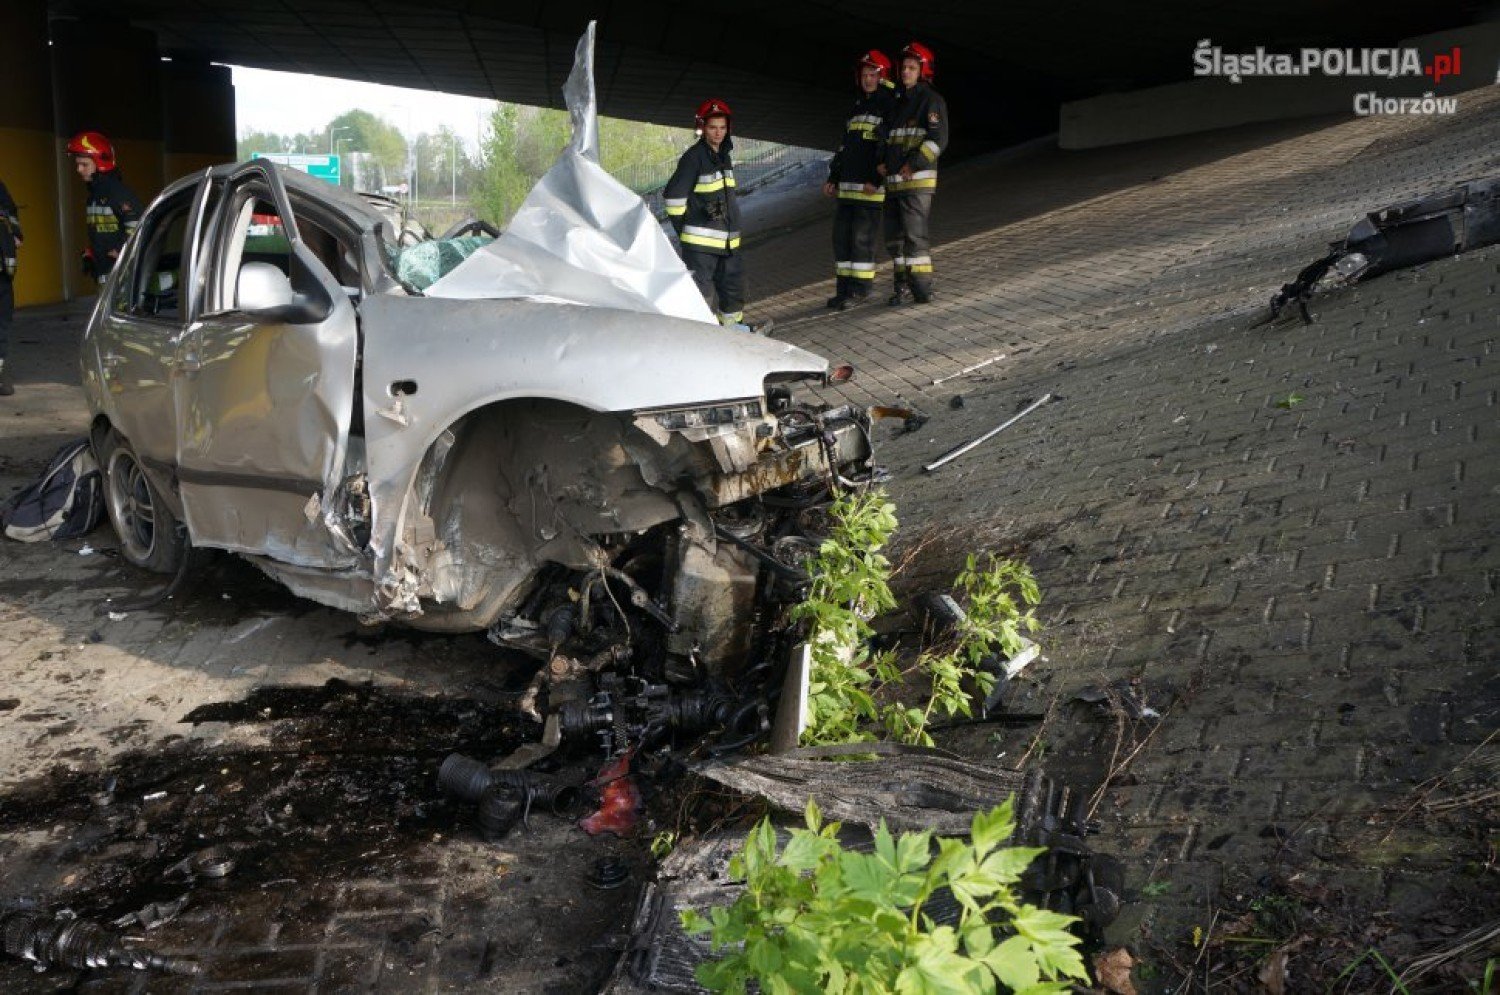 Chorzów: Śmiertelny Wypadek Na Dtś. Samochód Uderzył W Filar Wiaduktu, Zginął Kierowca | Chorzów Nasze Miasto